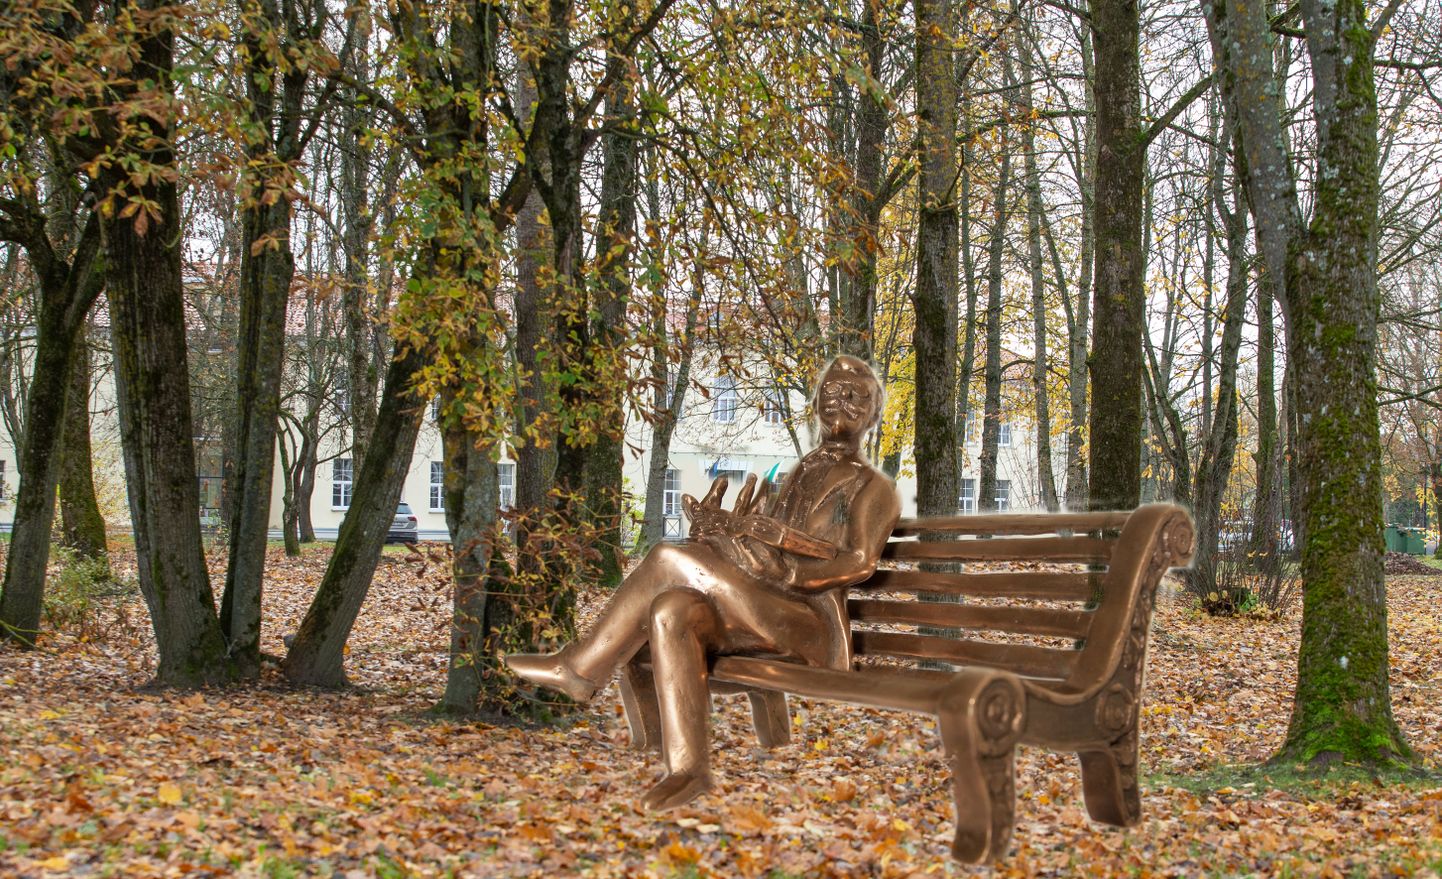 Sellele Jõhvi kohtumaja ning vallamaja vahelisele rohealale peaks kava kohaselt tulevikus tulema väike park, kus keskne koht Eduard Bornhöhe skulptuuril.